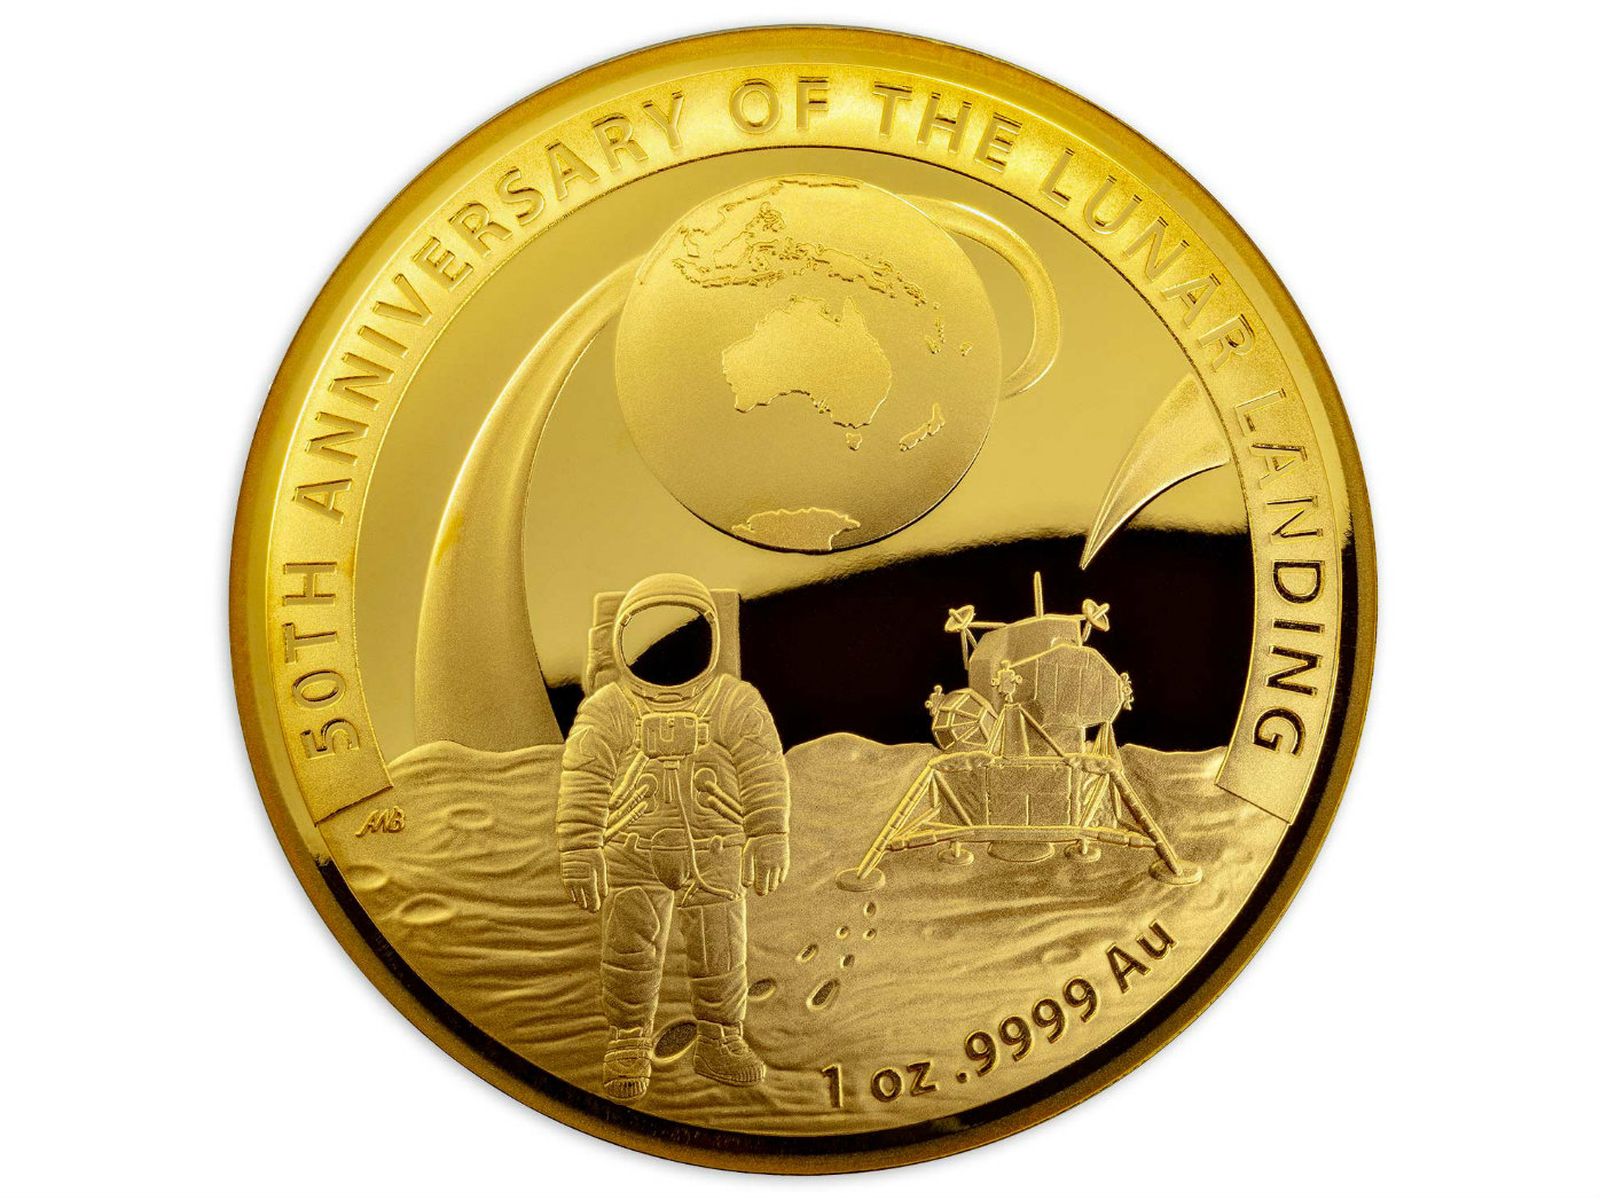 澳洲皇家铸币厂发行登月纪念币 共有3种